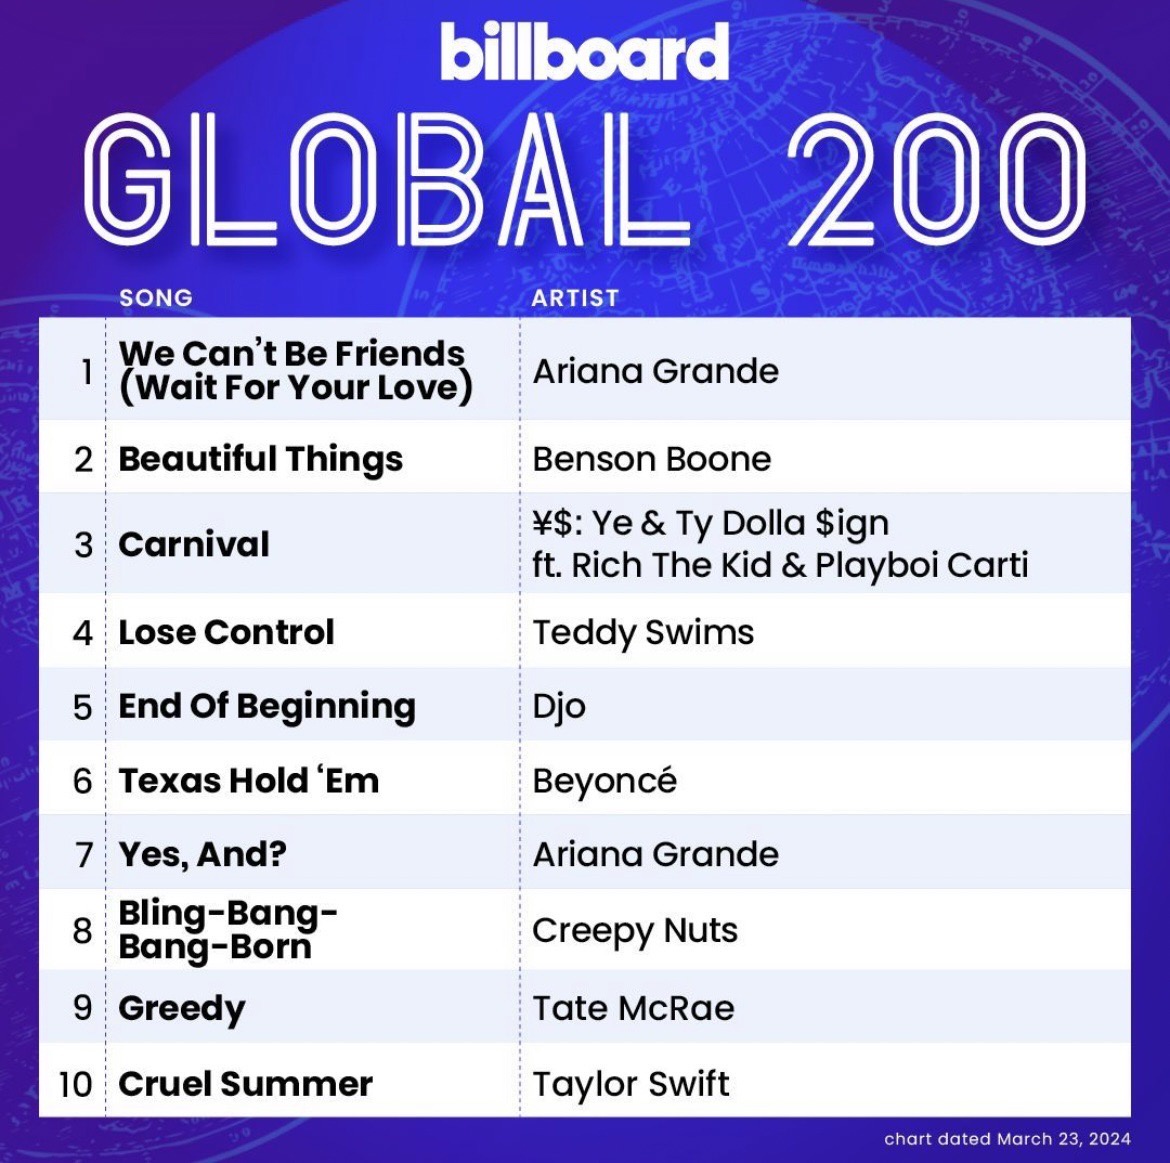 ฮอตไม่หยุด!! ซูเปอร์สตาร์สาว Ariana Grande ส่งแทร็กจากอัลบั้ม eternal sunshine ครองอันดับ 1 บนชาร์ต Billboard 200 และ Billboard Hot